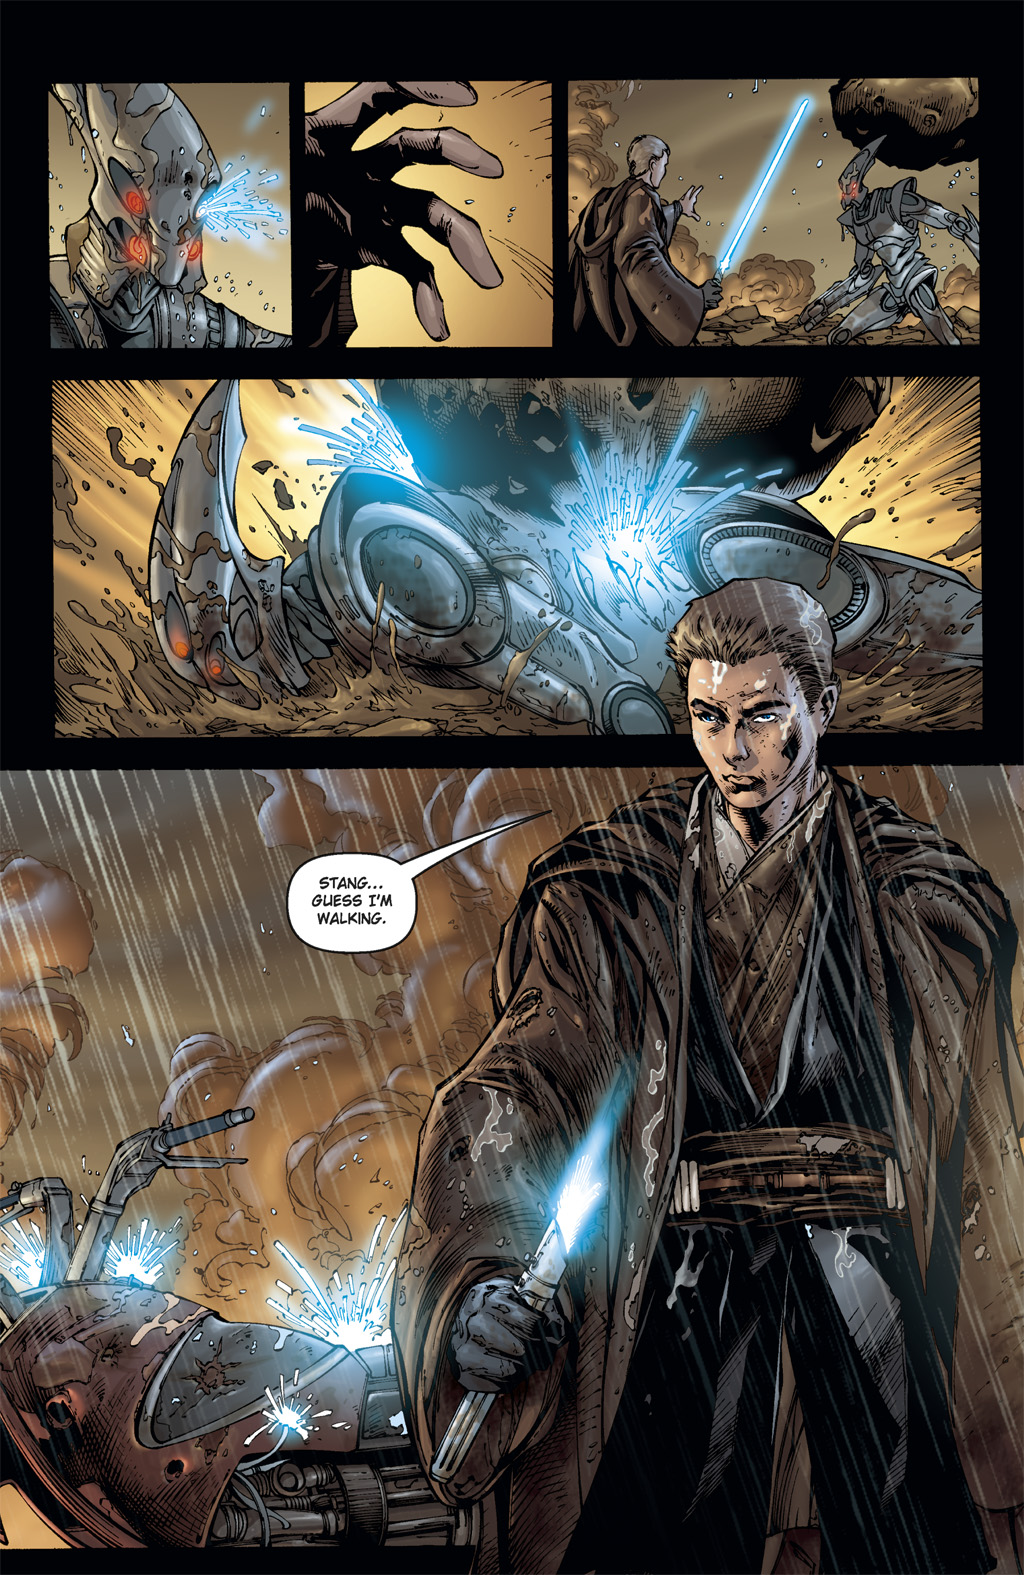 Read online Star Wars: Clone Wars comic -  Issue # TPB 3 - 77